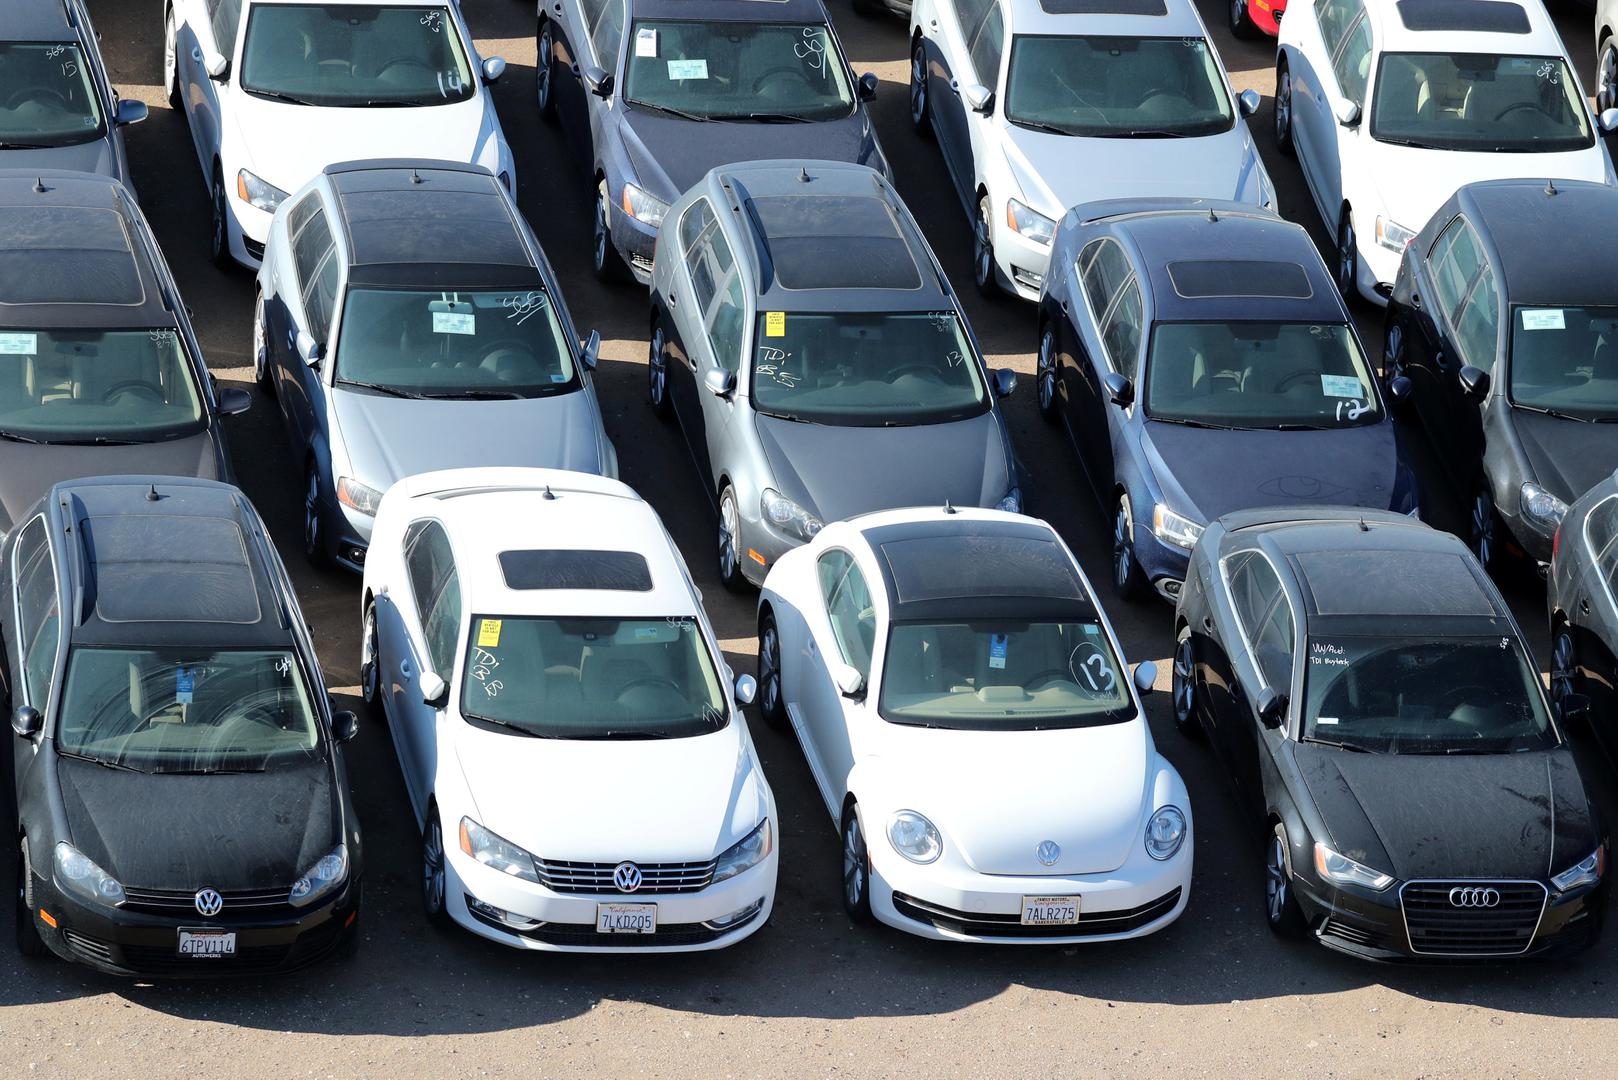 Međutim, nisu svi uskladišteni. U prosincu je Volkswagen objavio da je uništio oko 28.000 vozila, a ponovno prodao još 13.000